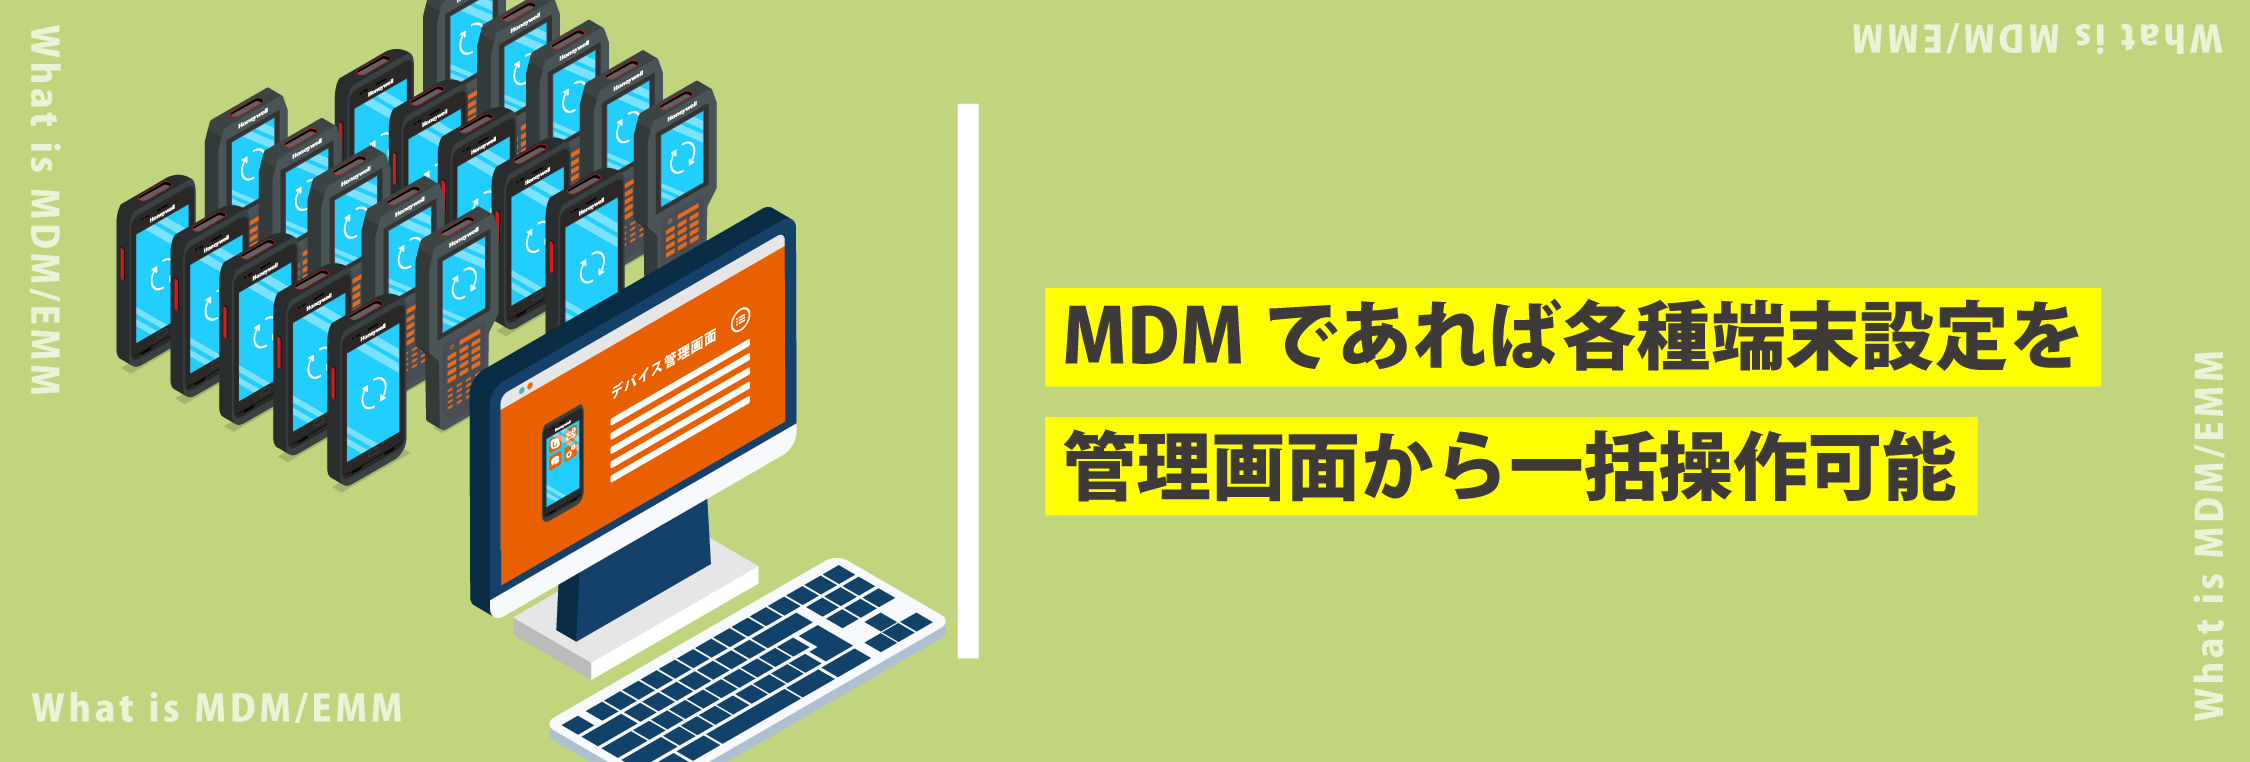 Mdm Emm モバイルデバイス管理 とは Android業務端末の相棒 自動認識の じ 自動認識を みじか にするメディア